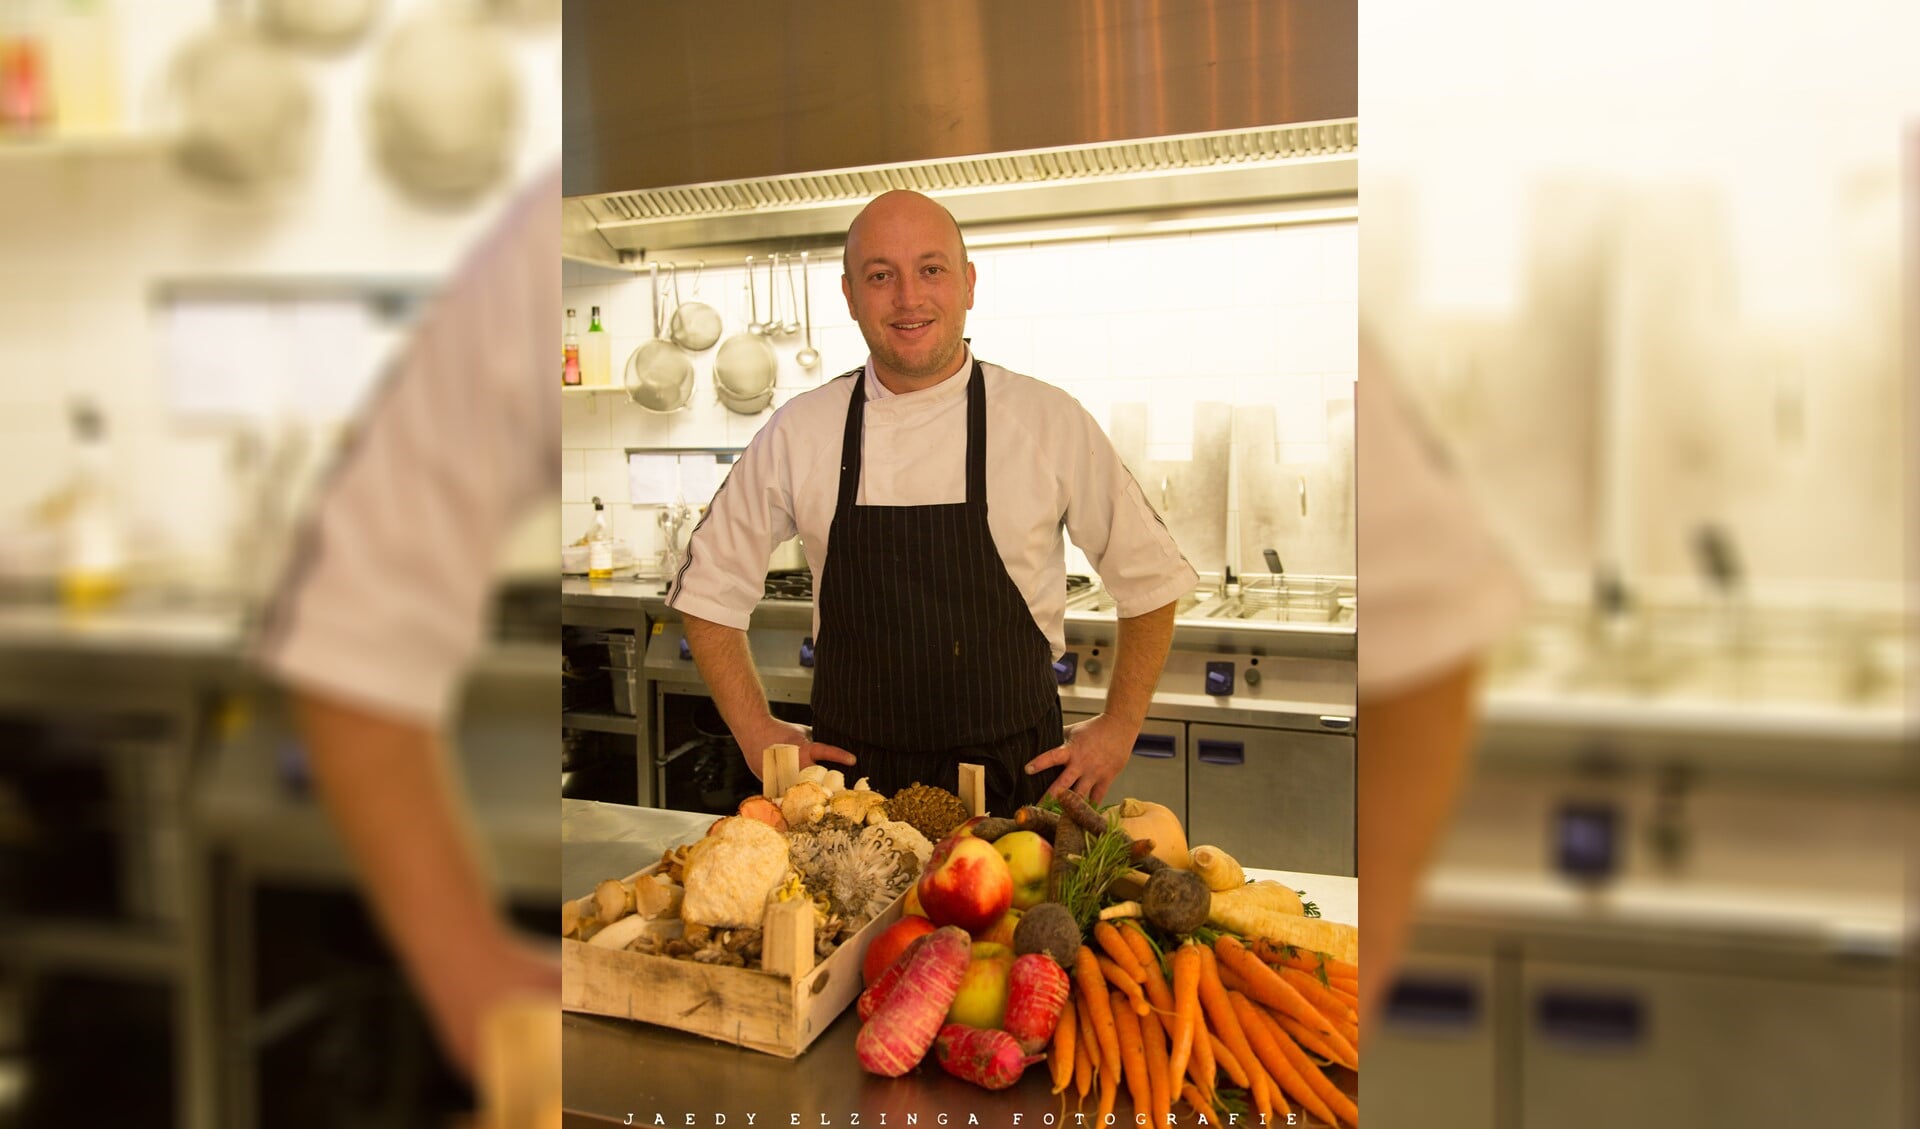 Michael Newton van Eigenwijz restaurant gebruikt veel verschillende groenten bij zijn gerechten (foto: Jaedy Elzinga Fotografie).